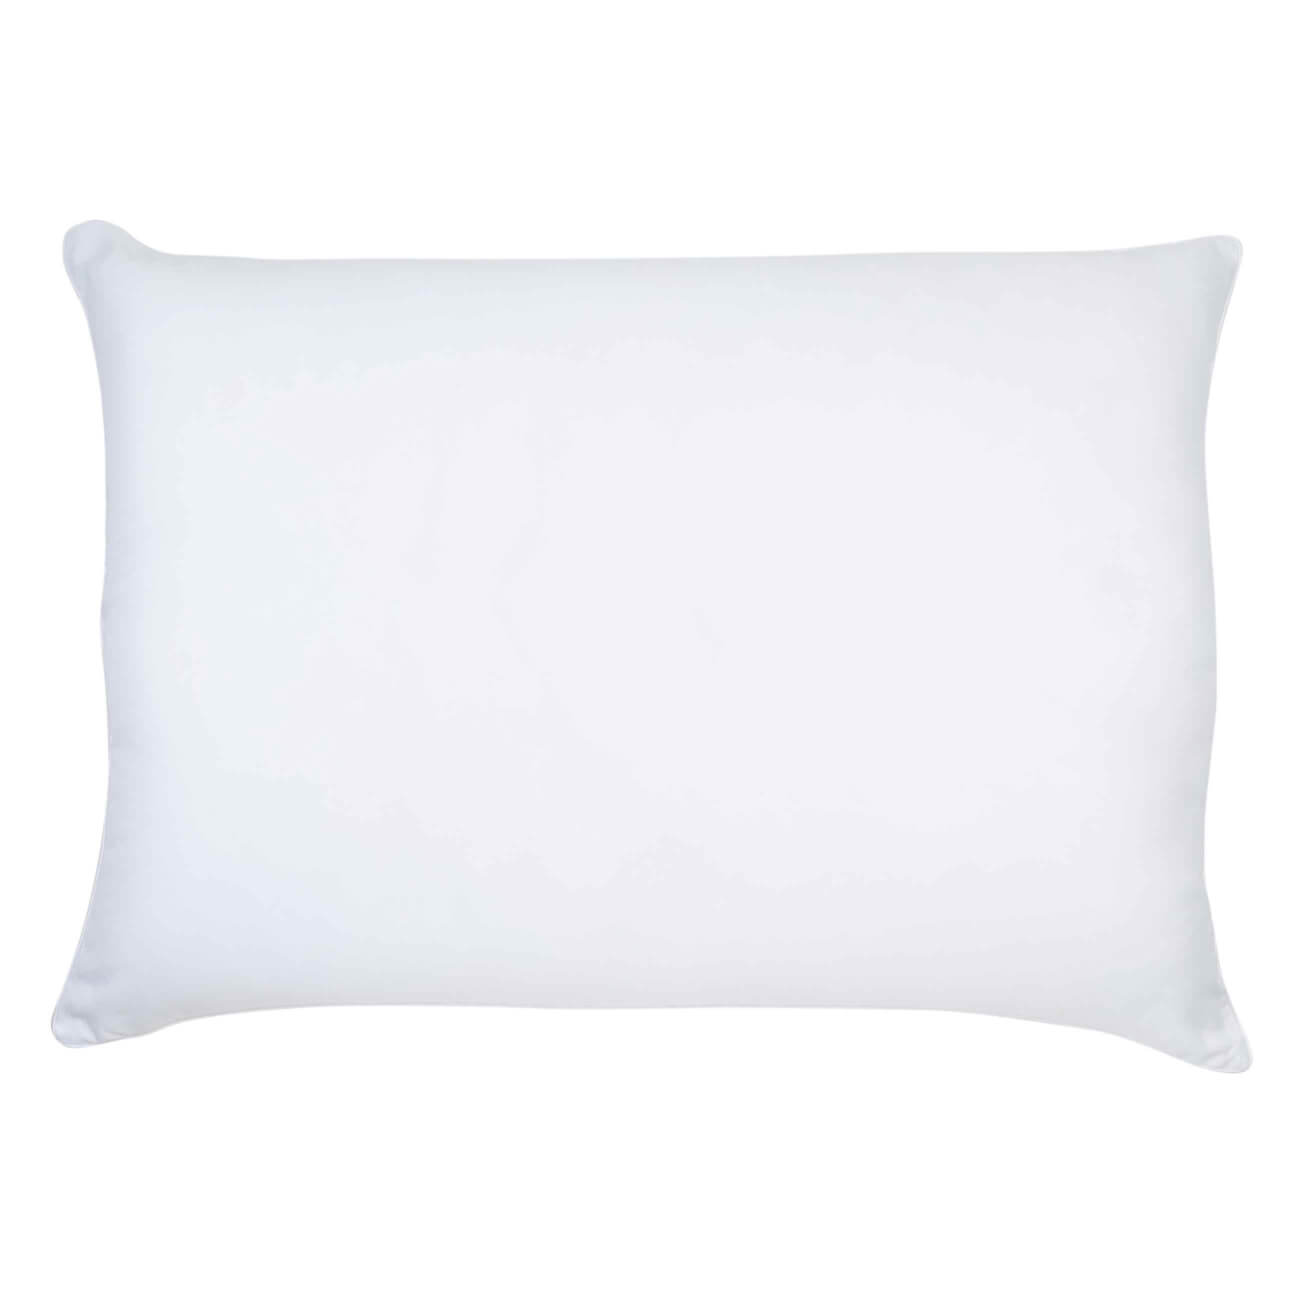 Pillow, 50x70 cm, cotton / microfiber, Soft cotton изображение № 1